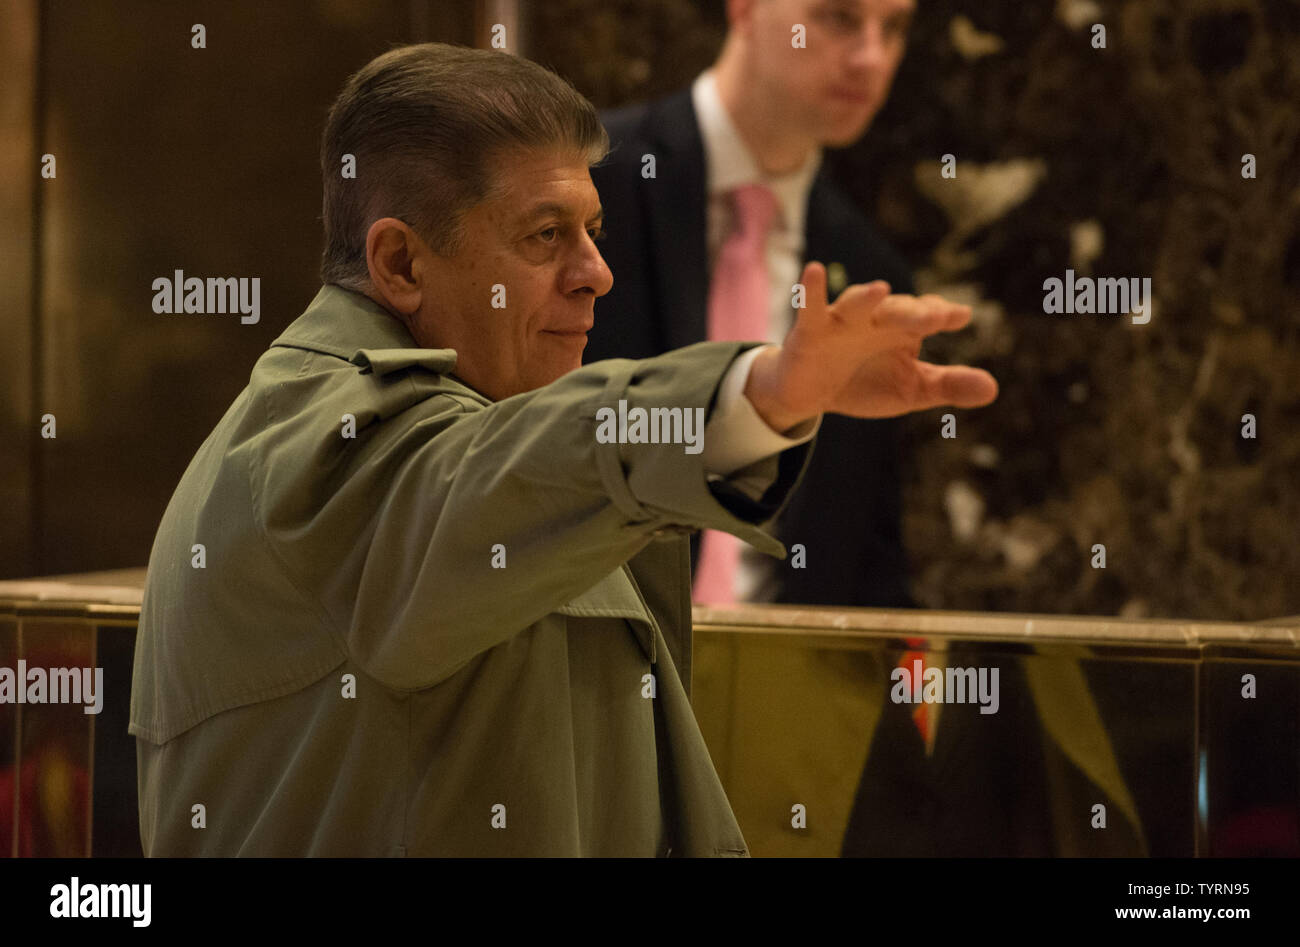 Andrew Napolitano arriva al Trump Tower on gennaio 17, 2017 a New York City. Stati Uniti Presidente Eletto Donald Trump è ancora tenere riunioni al piano di sopra al Trump Tower a soli 3 giorni prima dell'inaugurazione. Foto di Bryan R. Smith/UPI Foto Stock